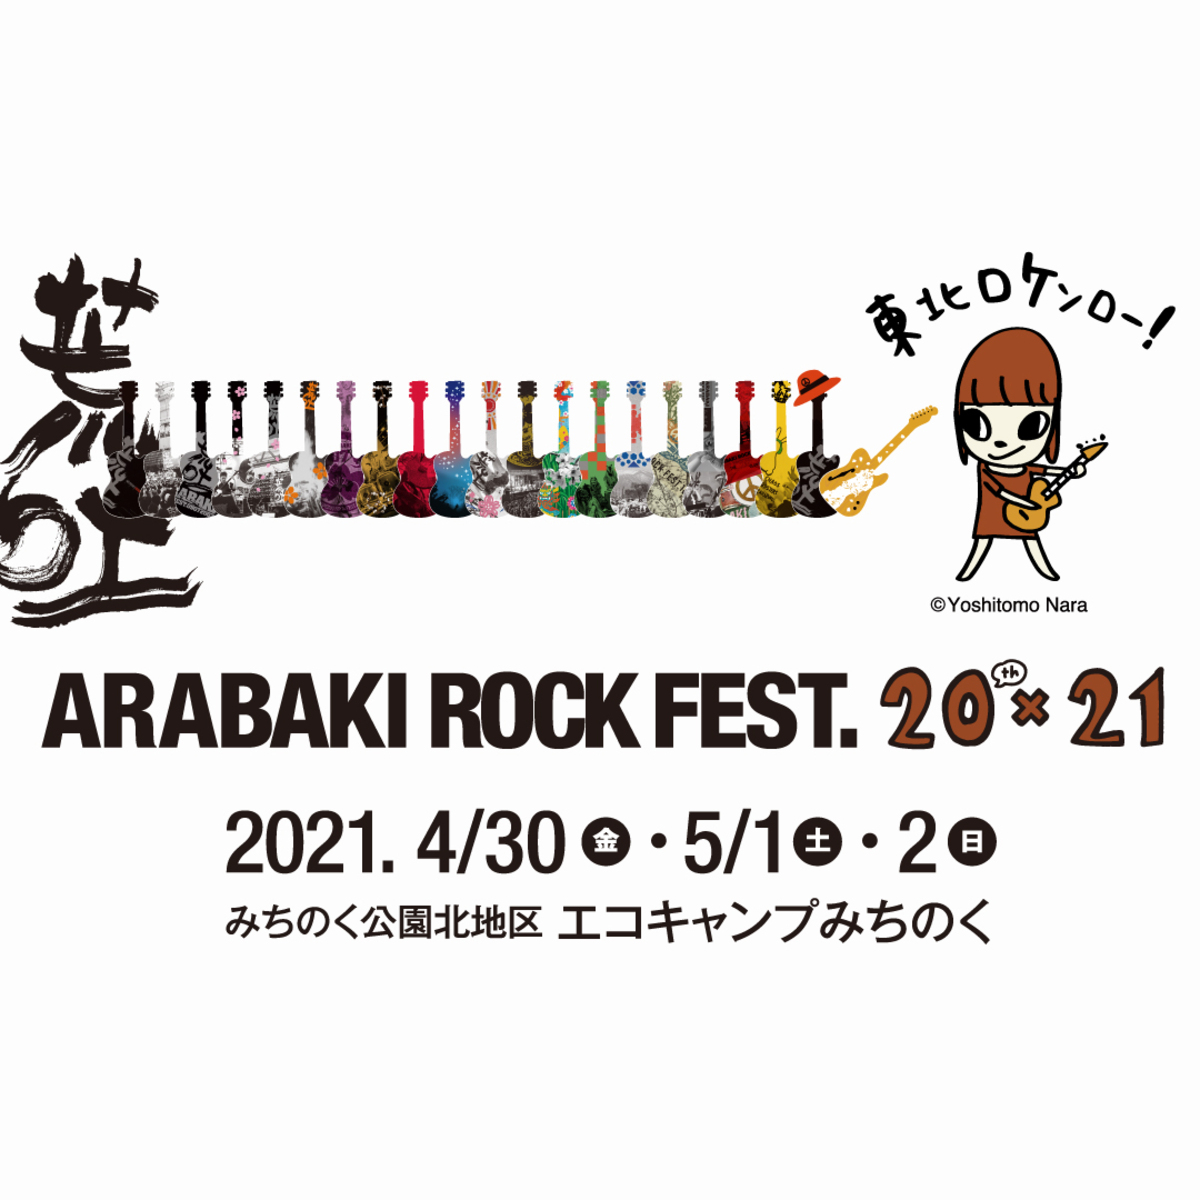 Arabaki Rock Fest th 21 出演アーティストにellegarden Brahman 10 Feet Man With A Missionら36組 激ロック ニュース